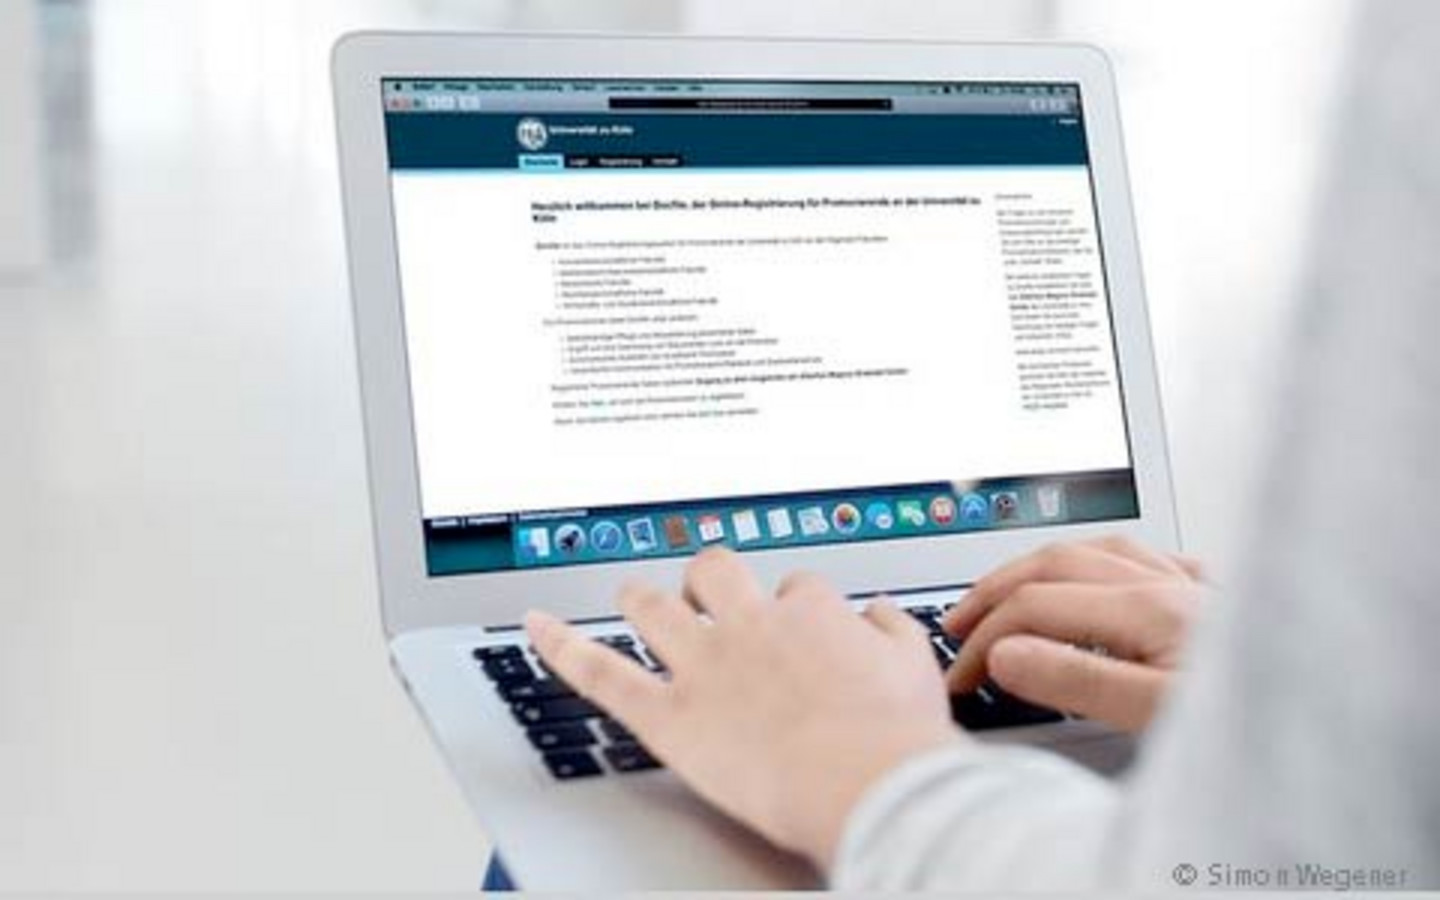 Docfile Registrierung Teaser - hands typing on a laptop